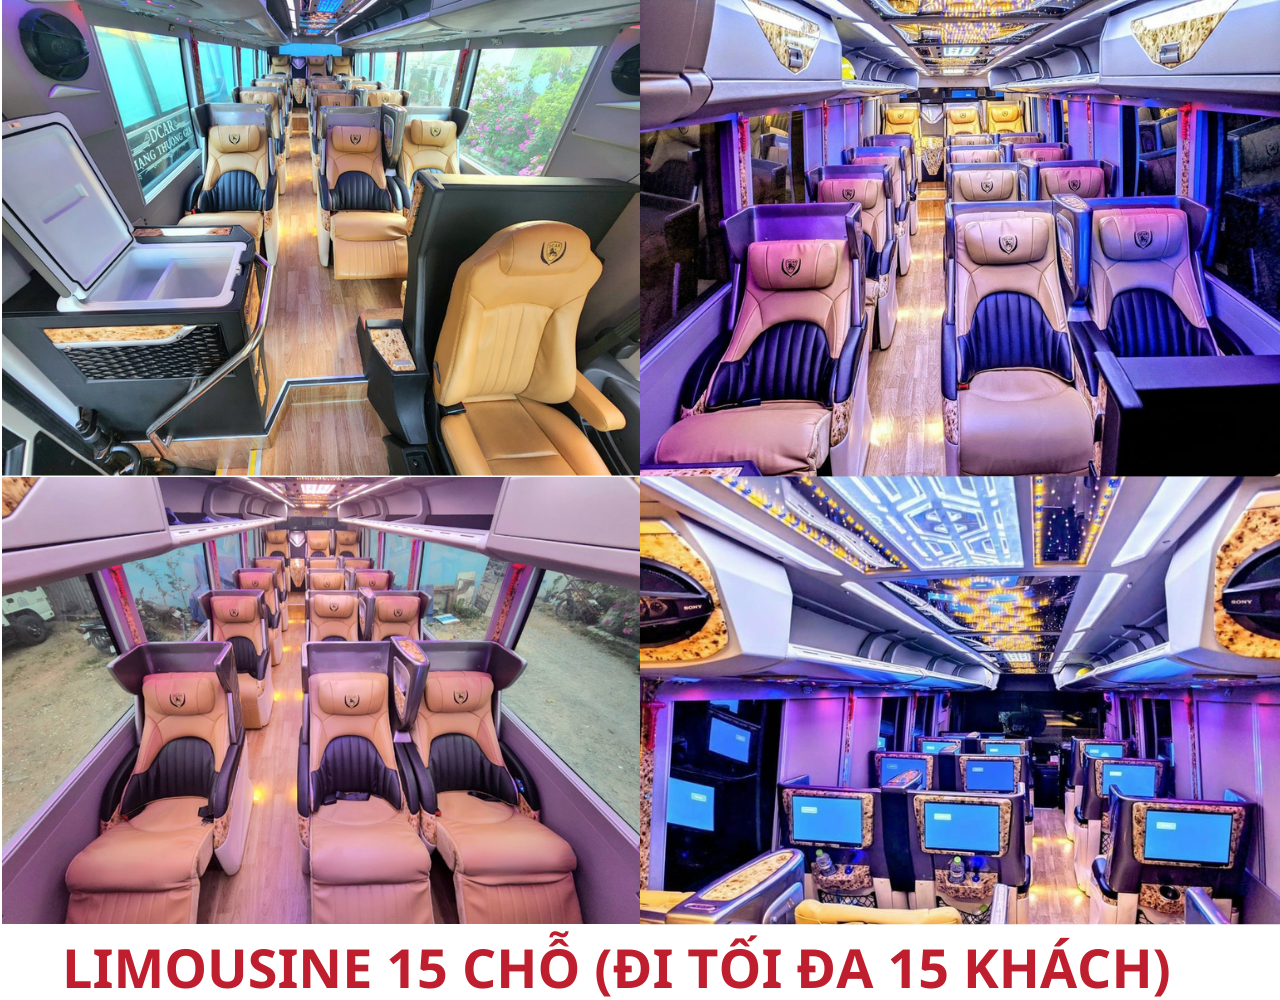 limousine-15-cho-di-toi-da-15-khach.png (2.24 MB)